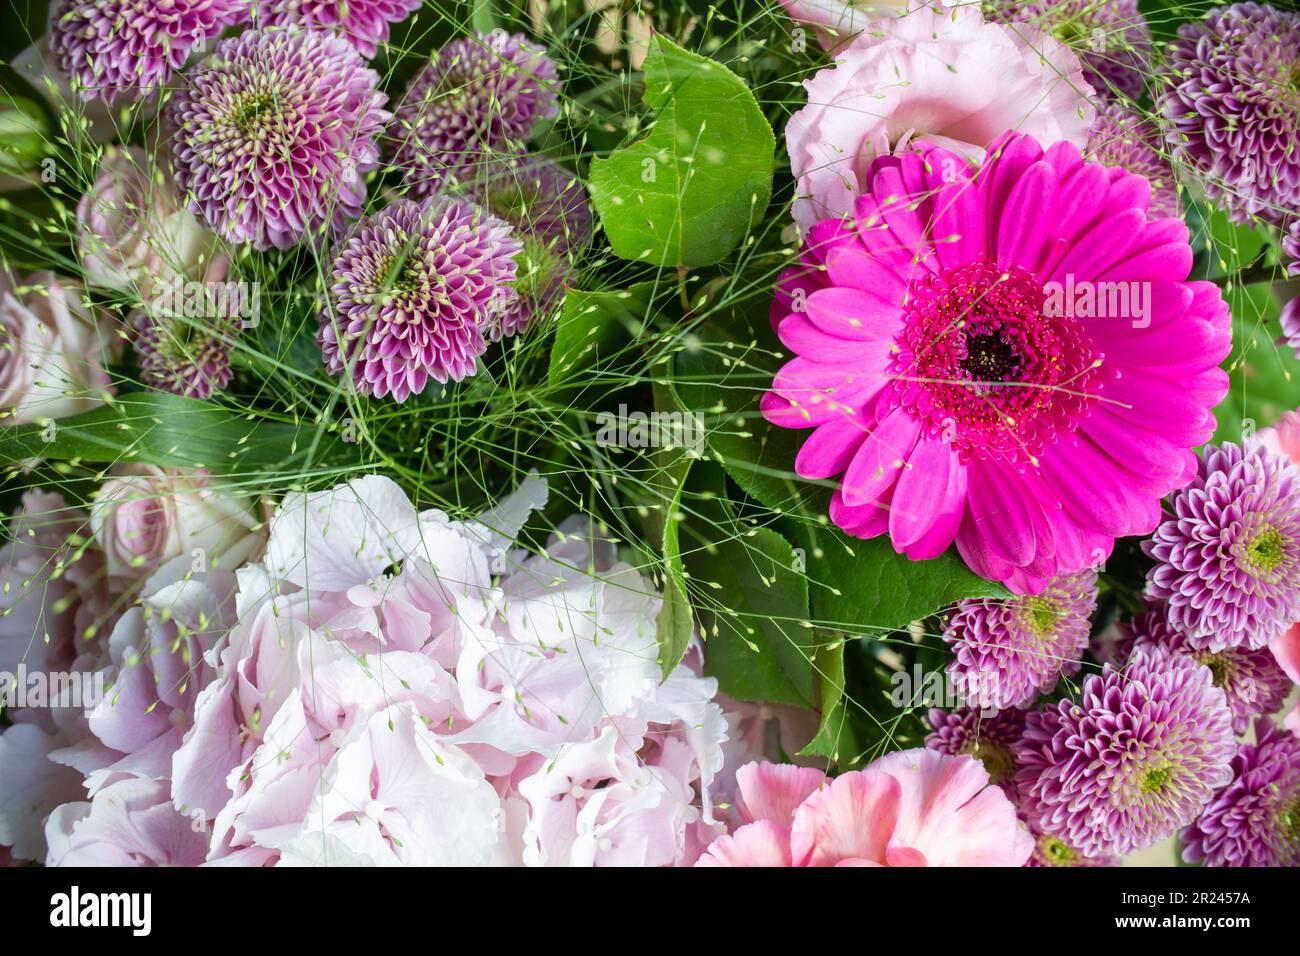 Primo piano di un mazzo di fiori rosa con una gerbera daisy e dalias Foto Stock